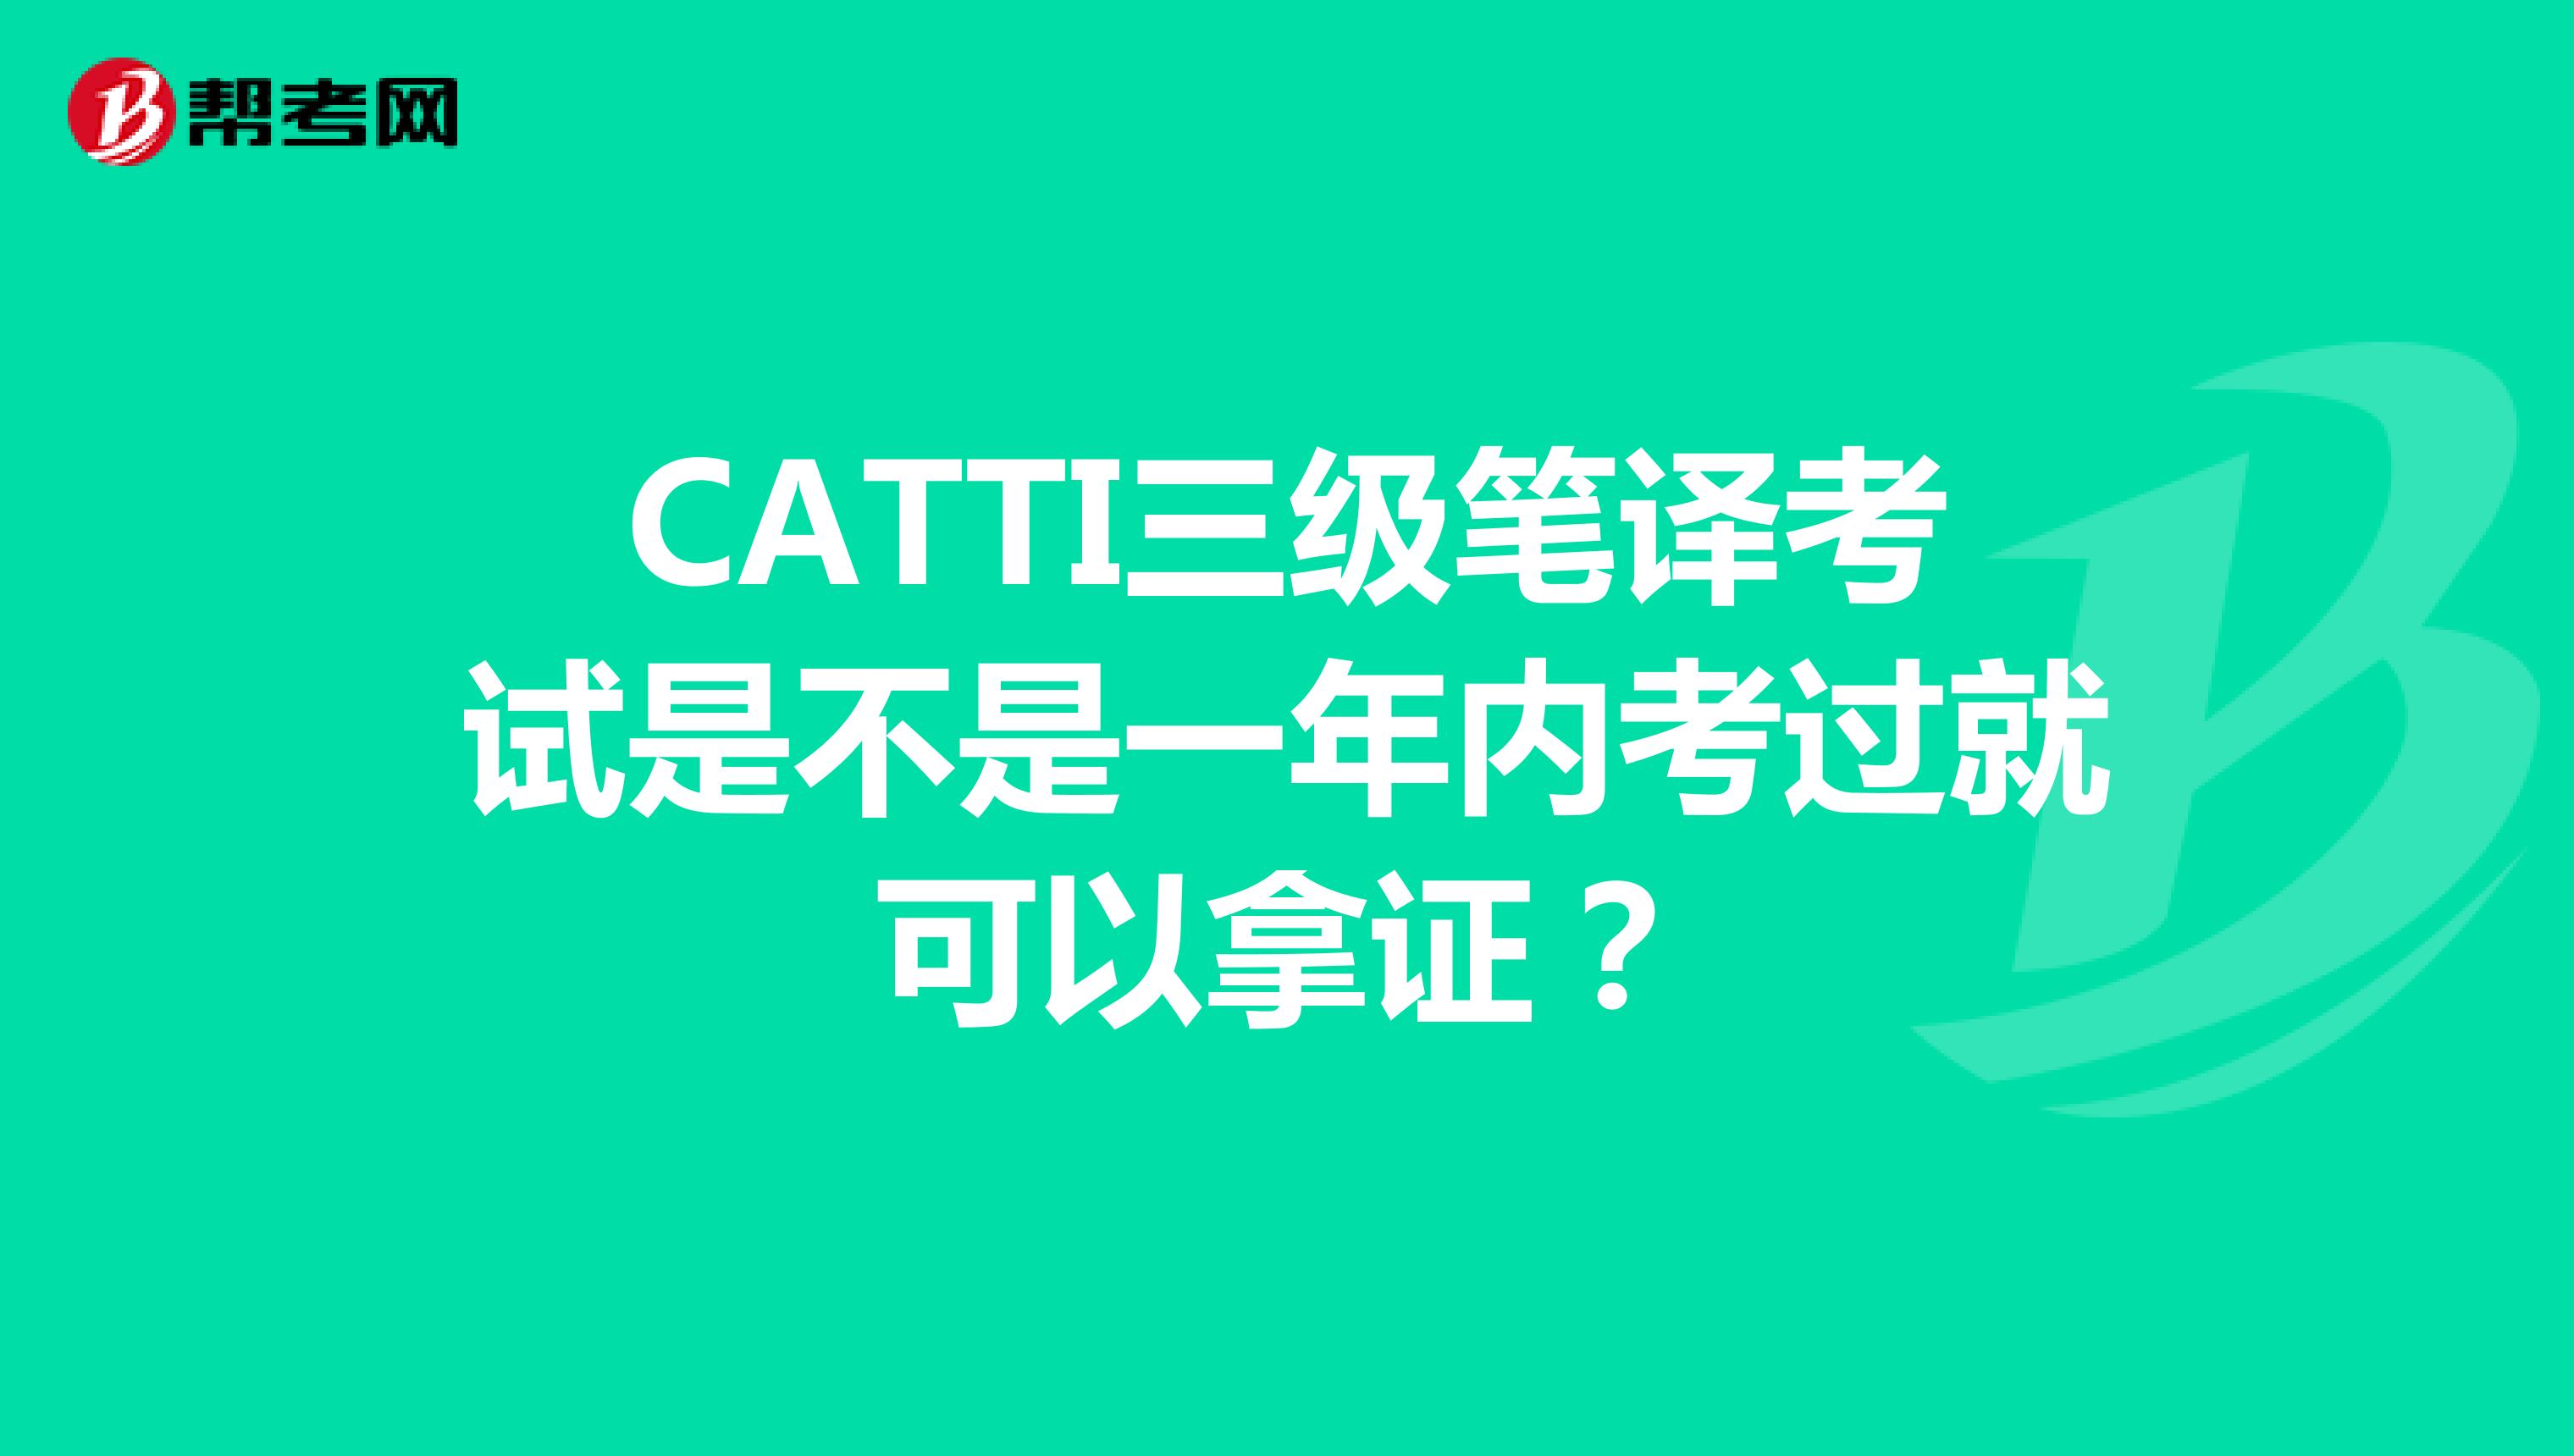 CATTI三级笔译考试是不是一年内考过就可以拿证？